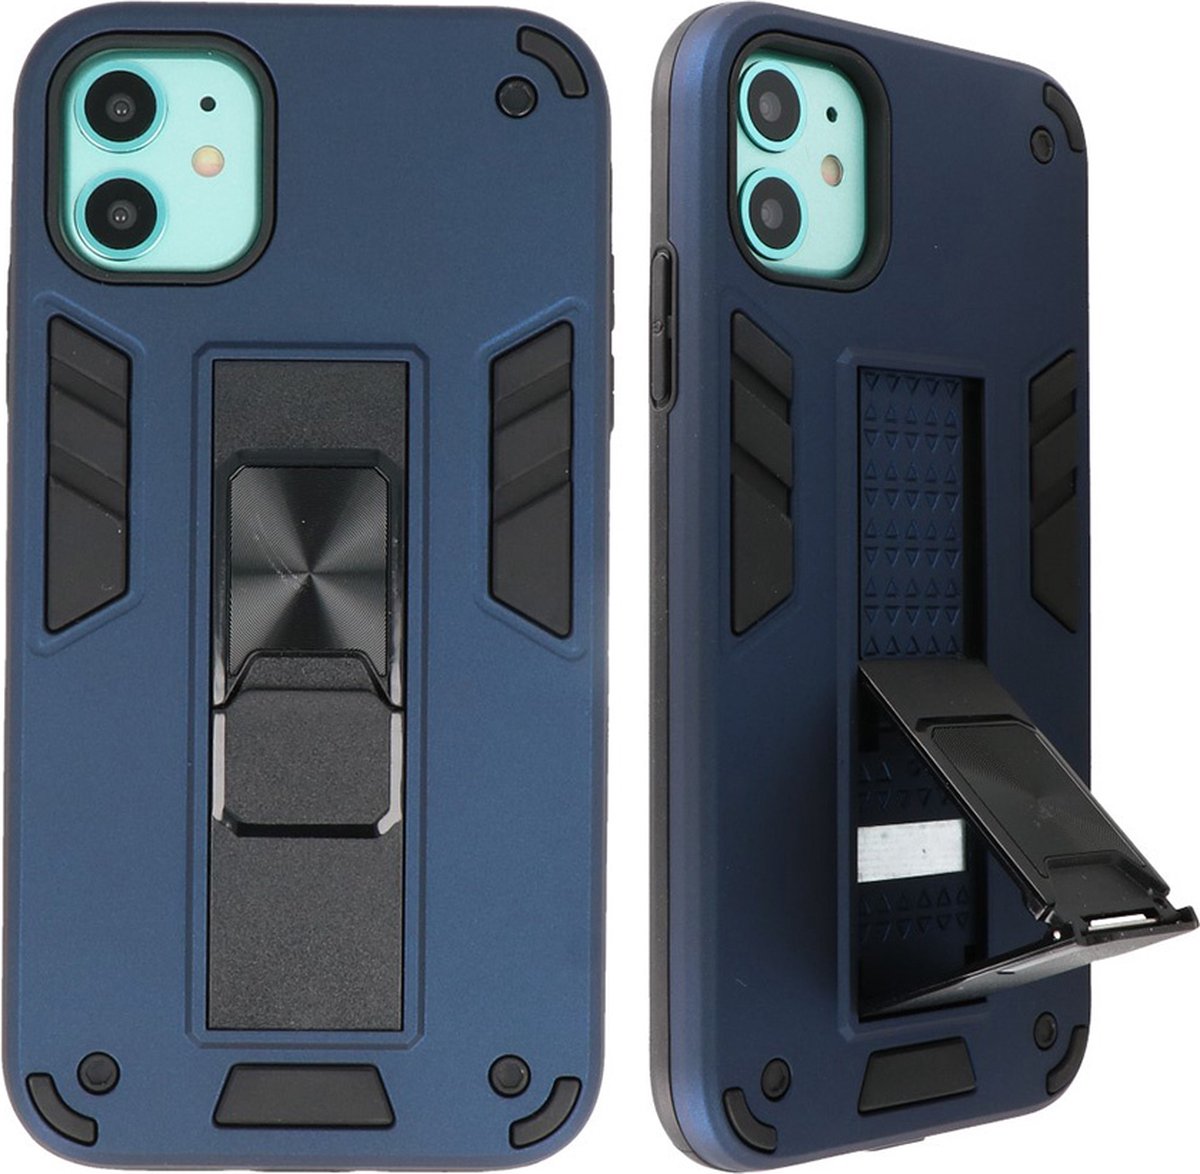 Hoesje Stand Hardcase Back Cover Color Navy geschikt voor Iphone 12 Mini